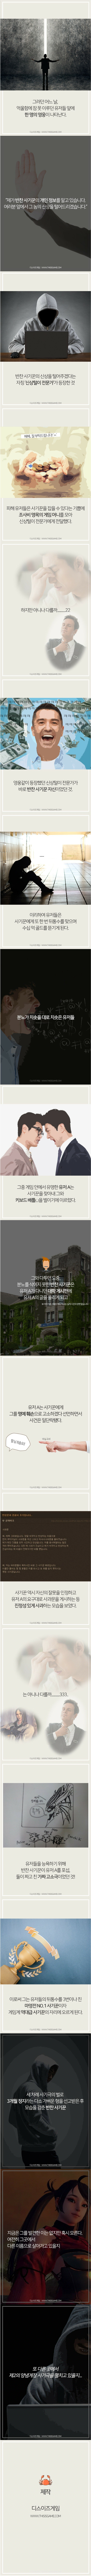 '마영전' 전설의 게장 사기 사건(분노주의).jpg